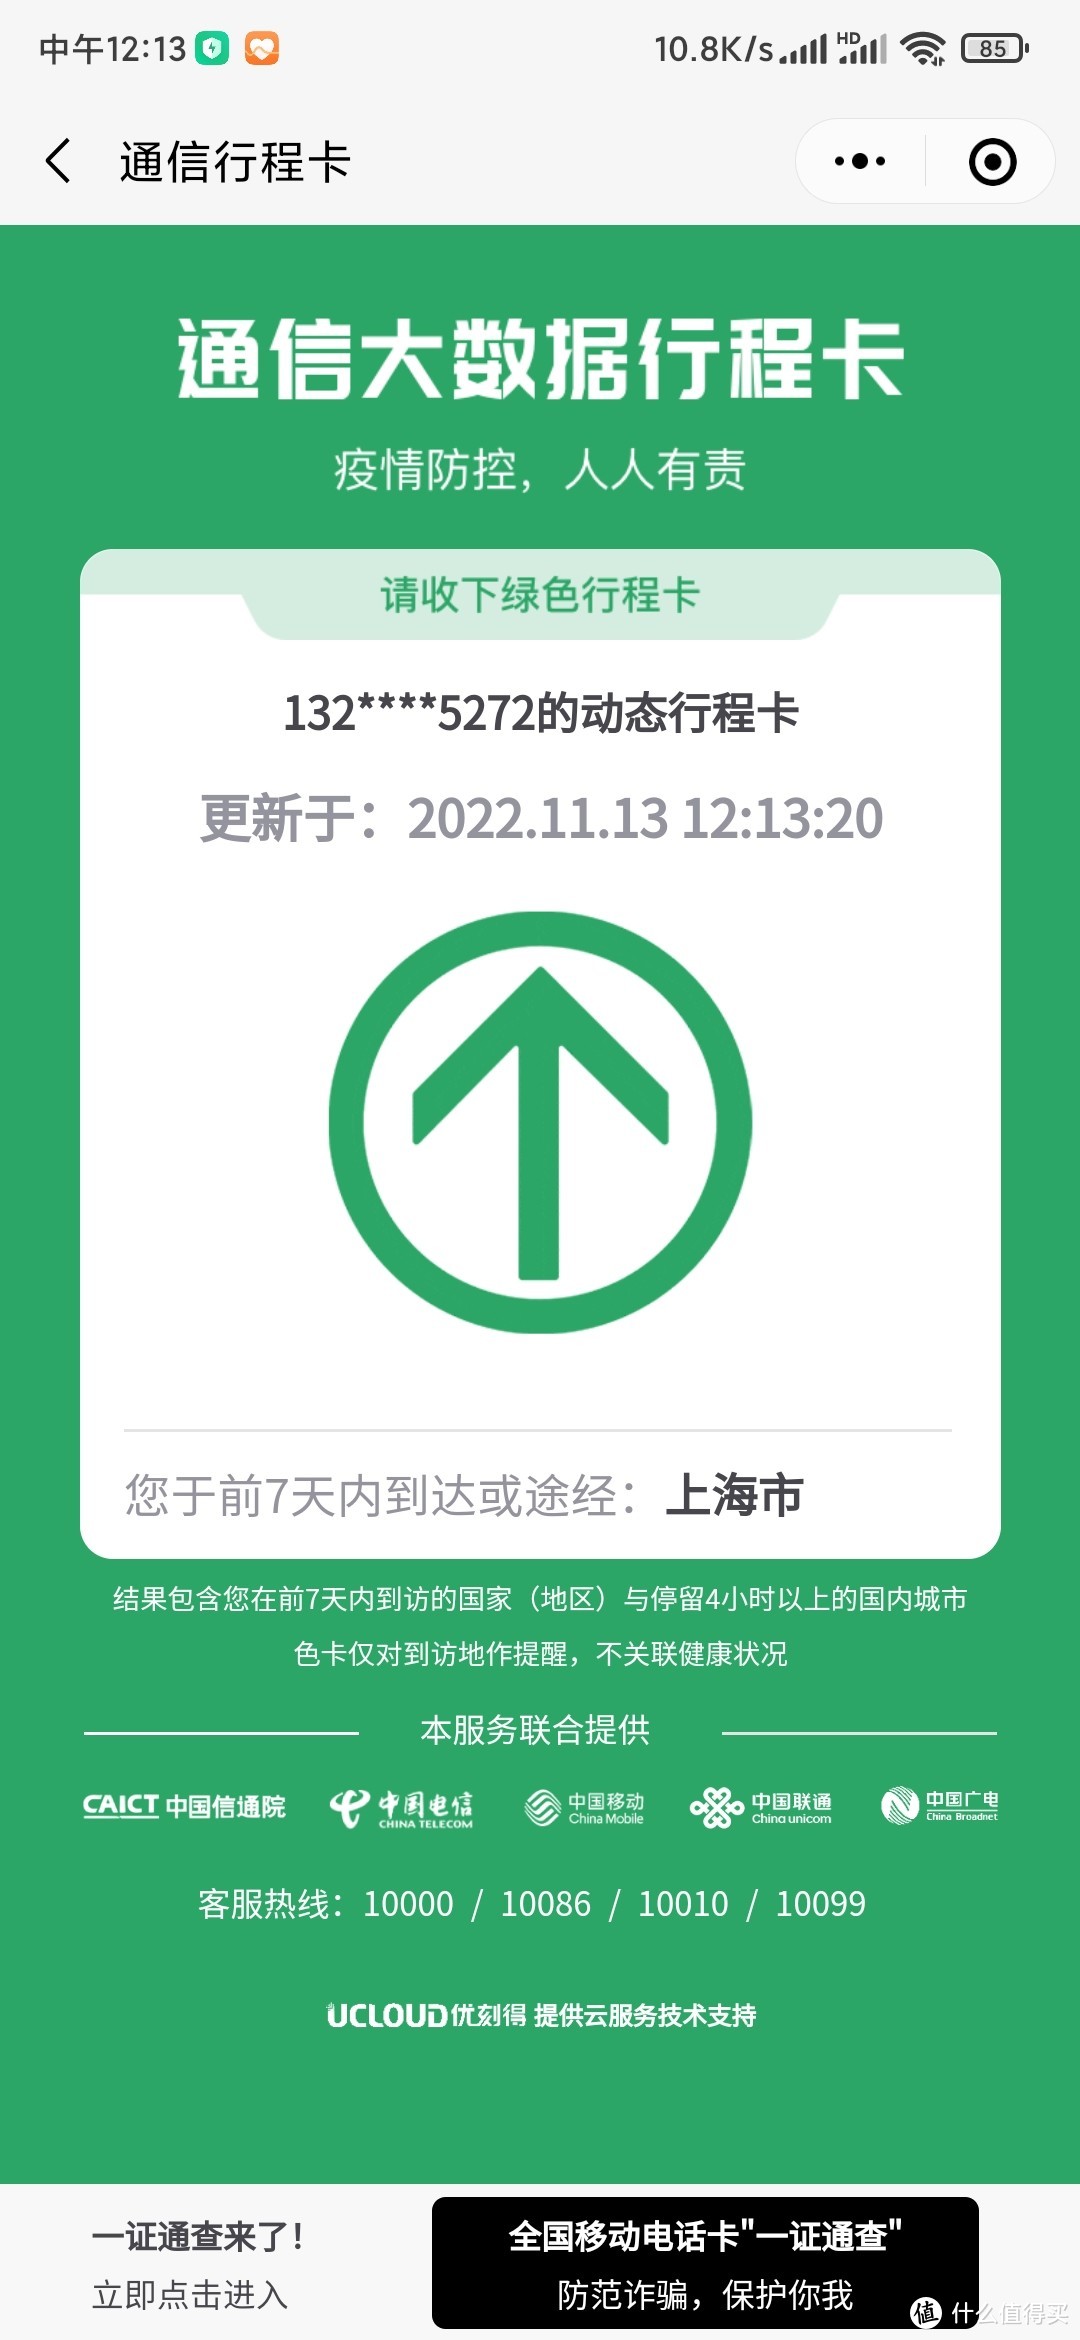 行程码只有上海市。本人工作地和居住地都在闵行区，申请解除弹窗时，闵行区属于常态化管控区域